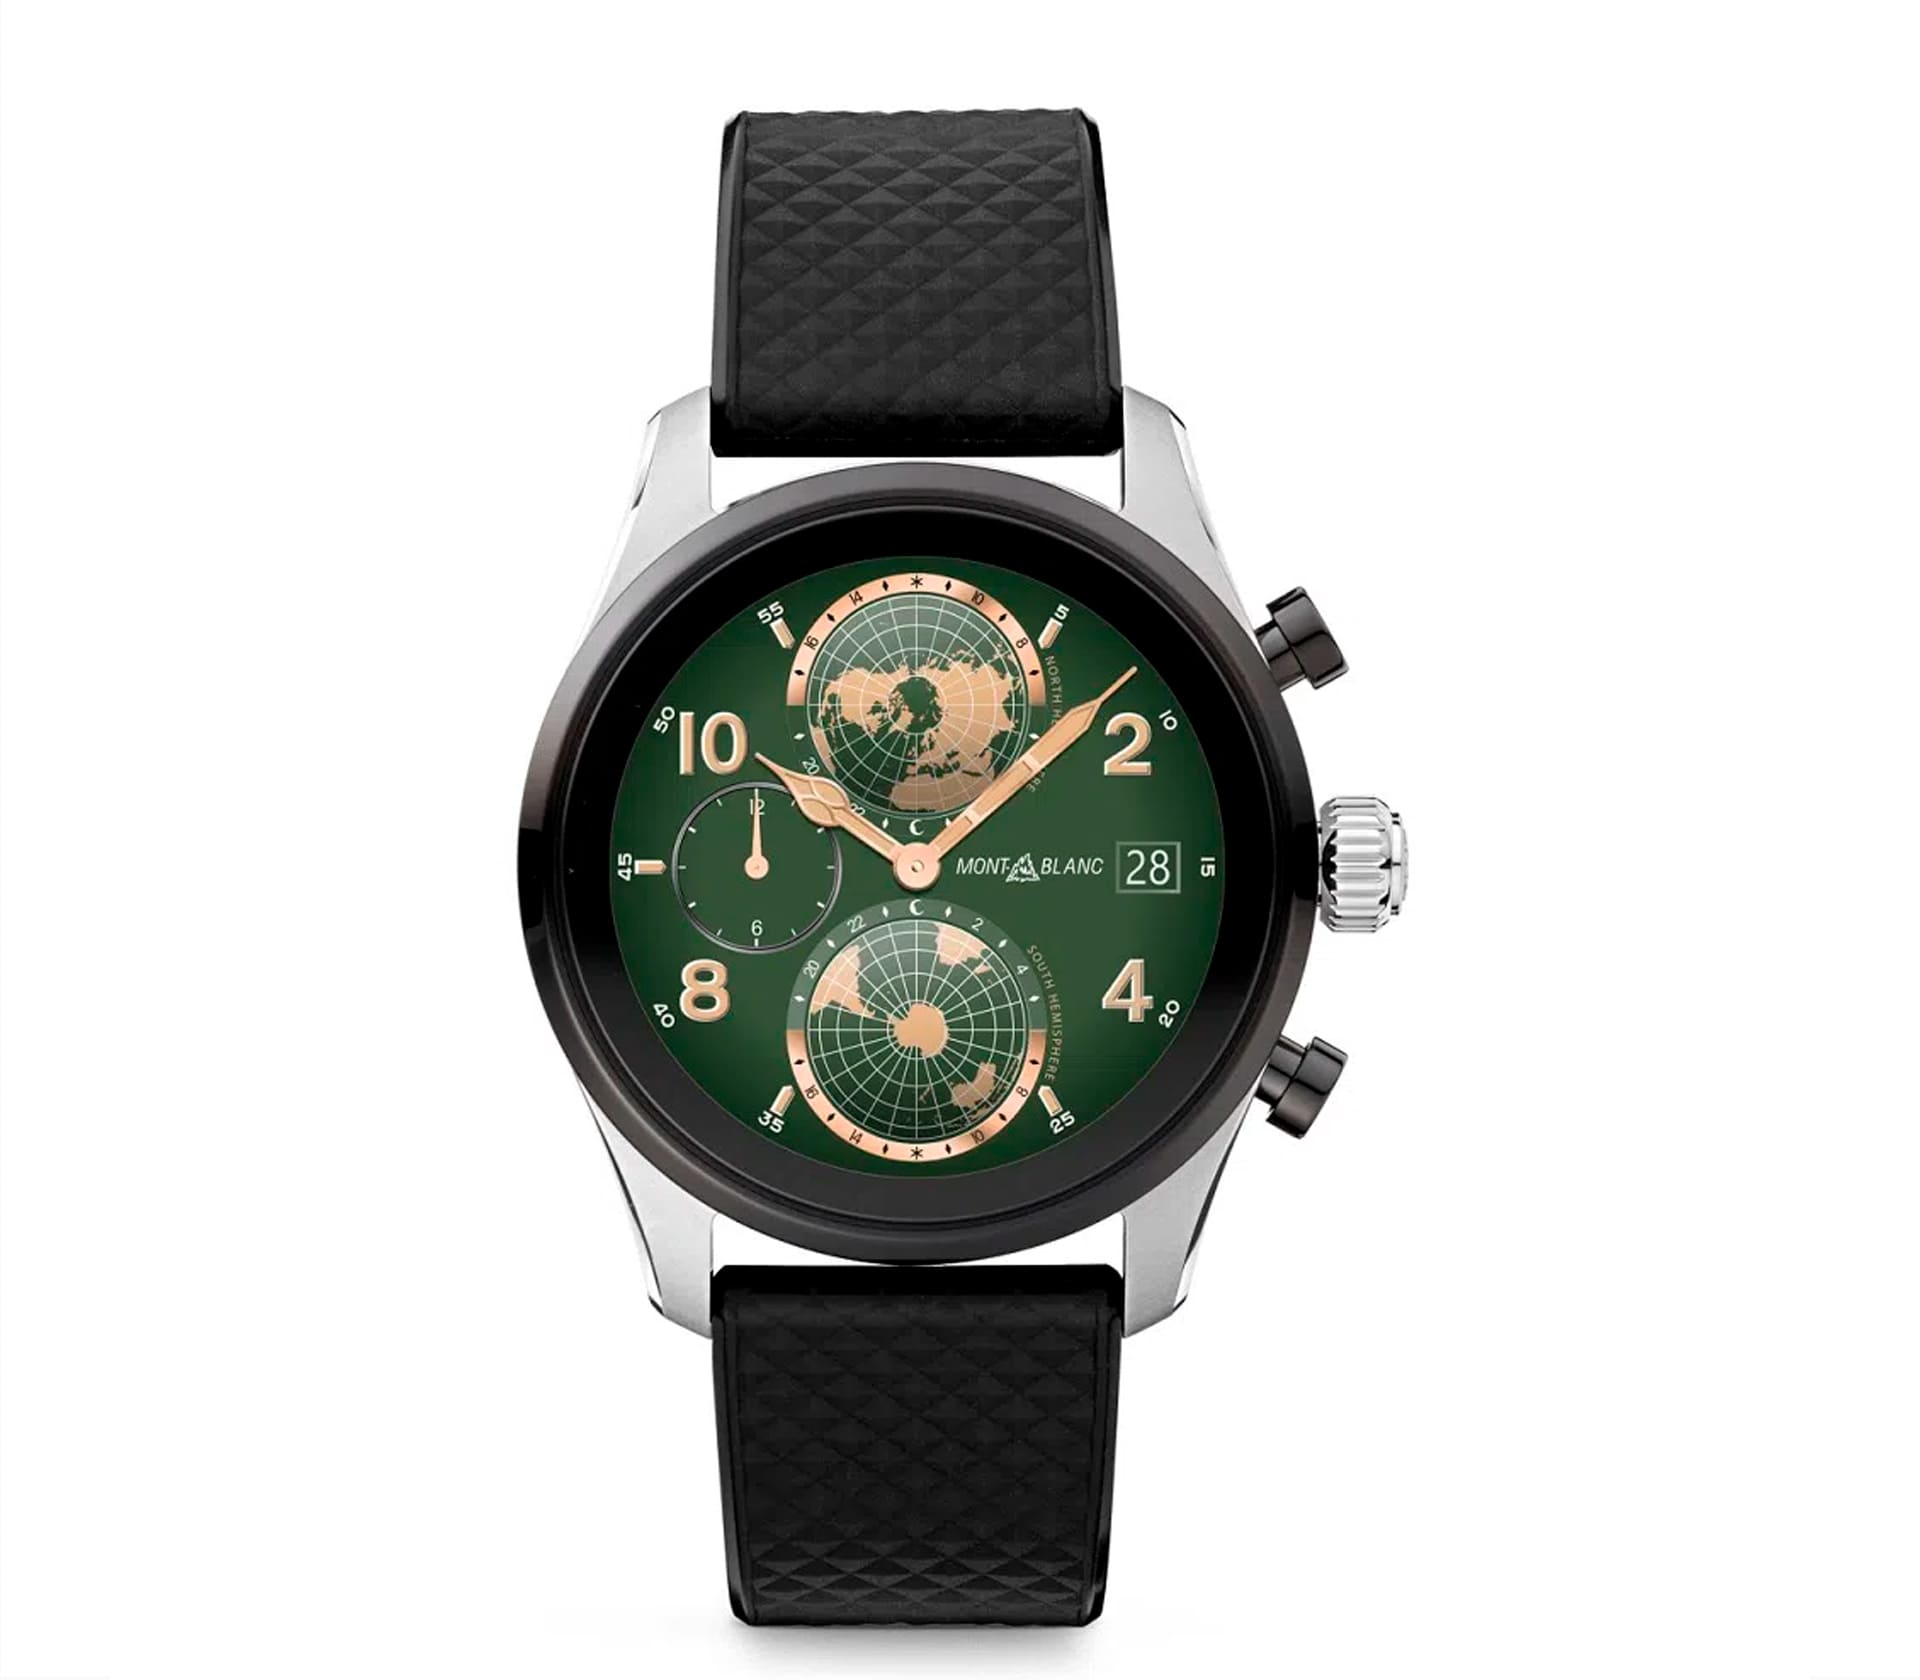 Summit 3 Smartwatch - Caixa em Titânio Bicolor e 2 pulseiras